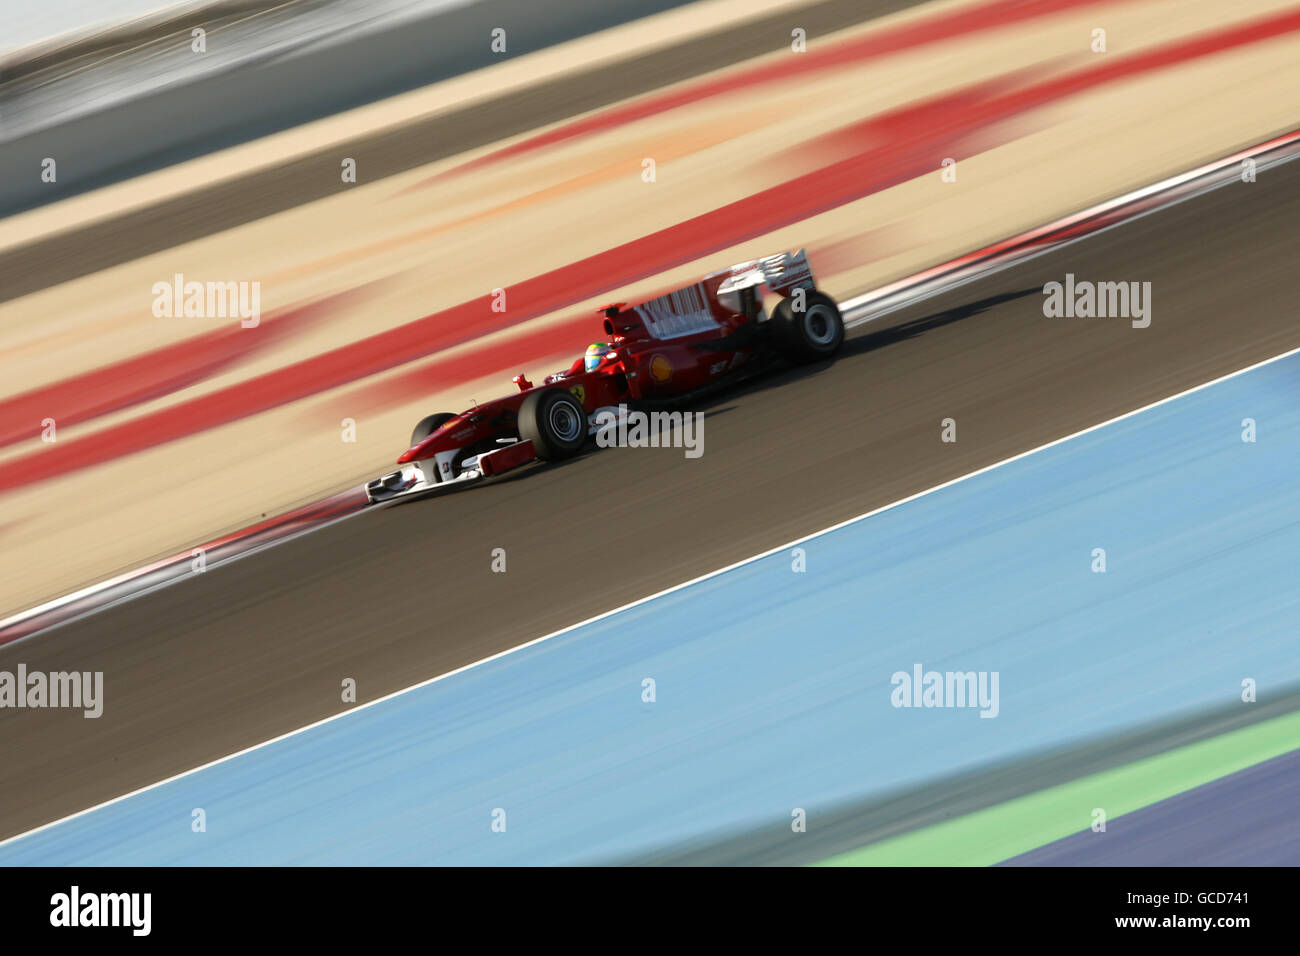 Ferrari's Felipe Massa during the Gulf Air Bahrain Grand Prix at the Bahrain International Circuit in Sakhir, Bahrain Stock Photo